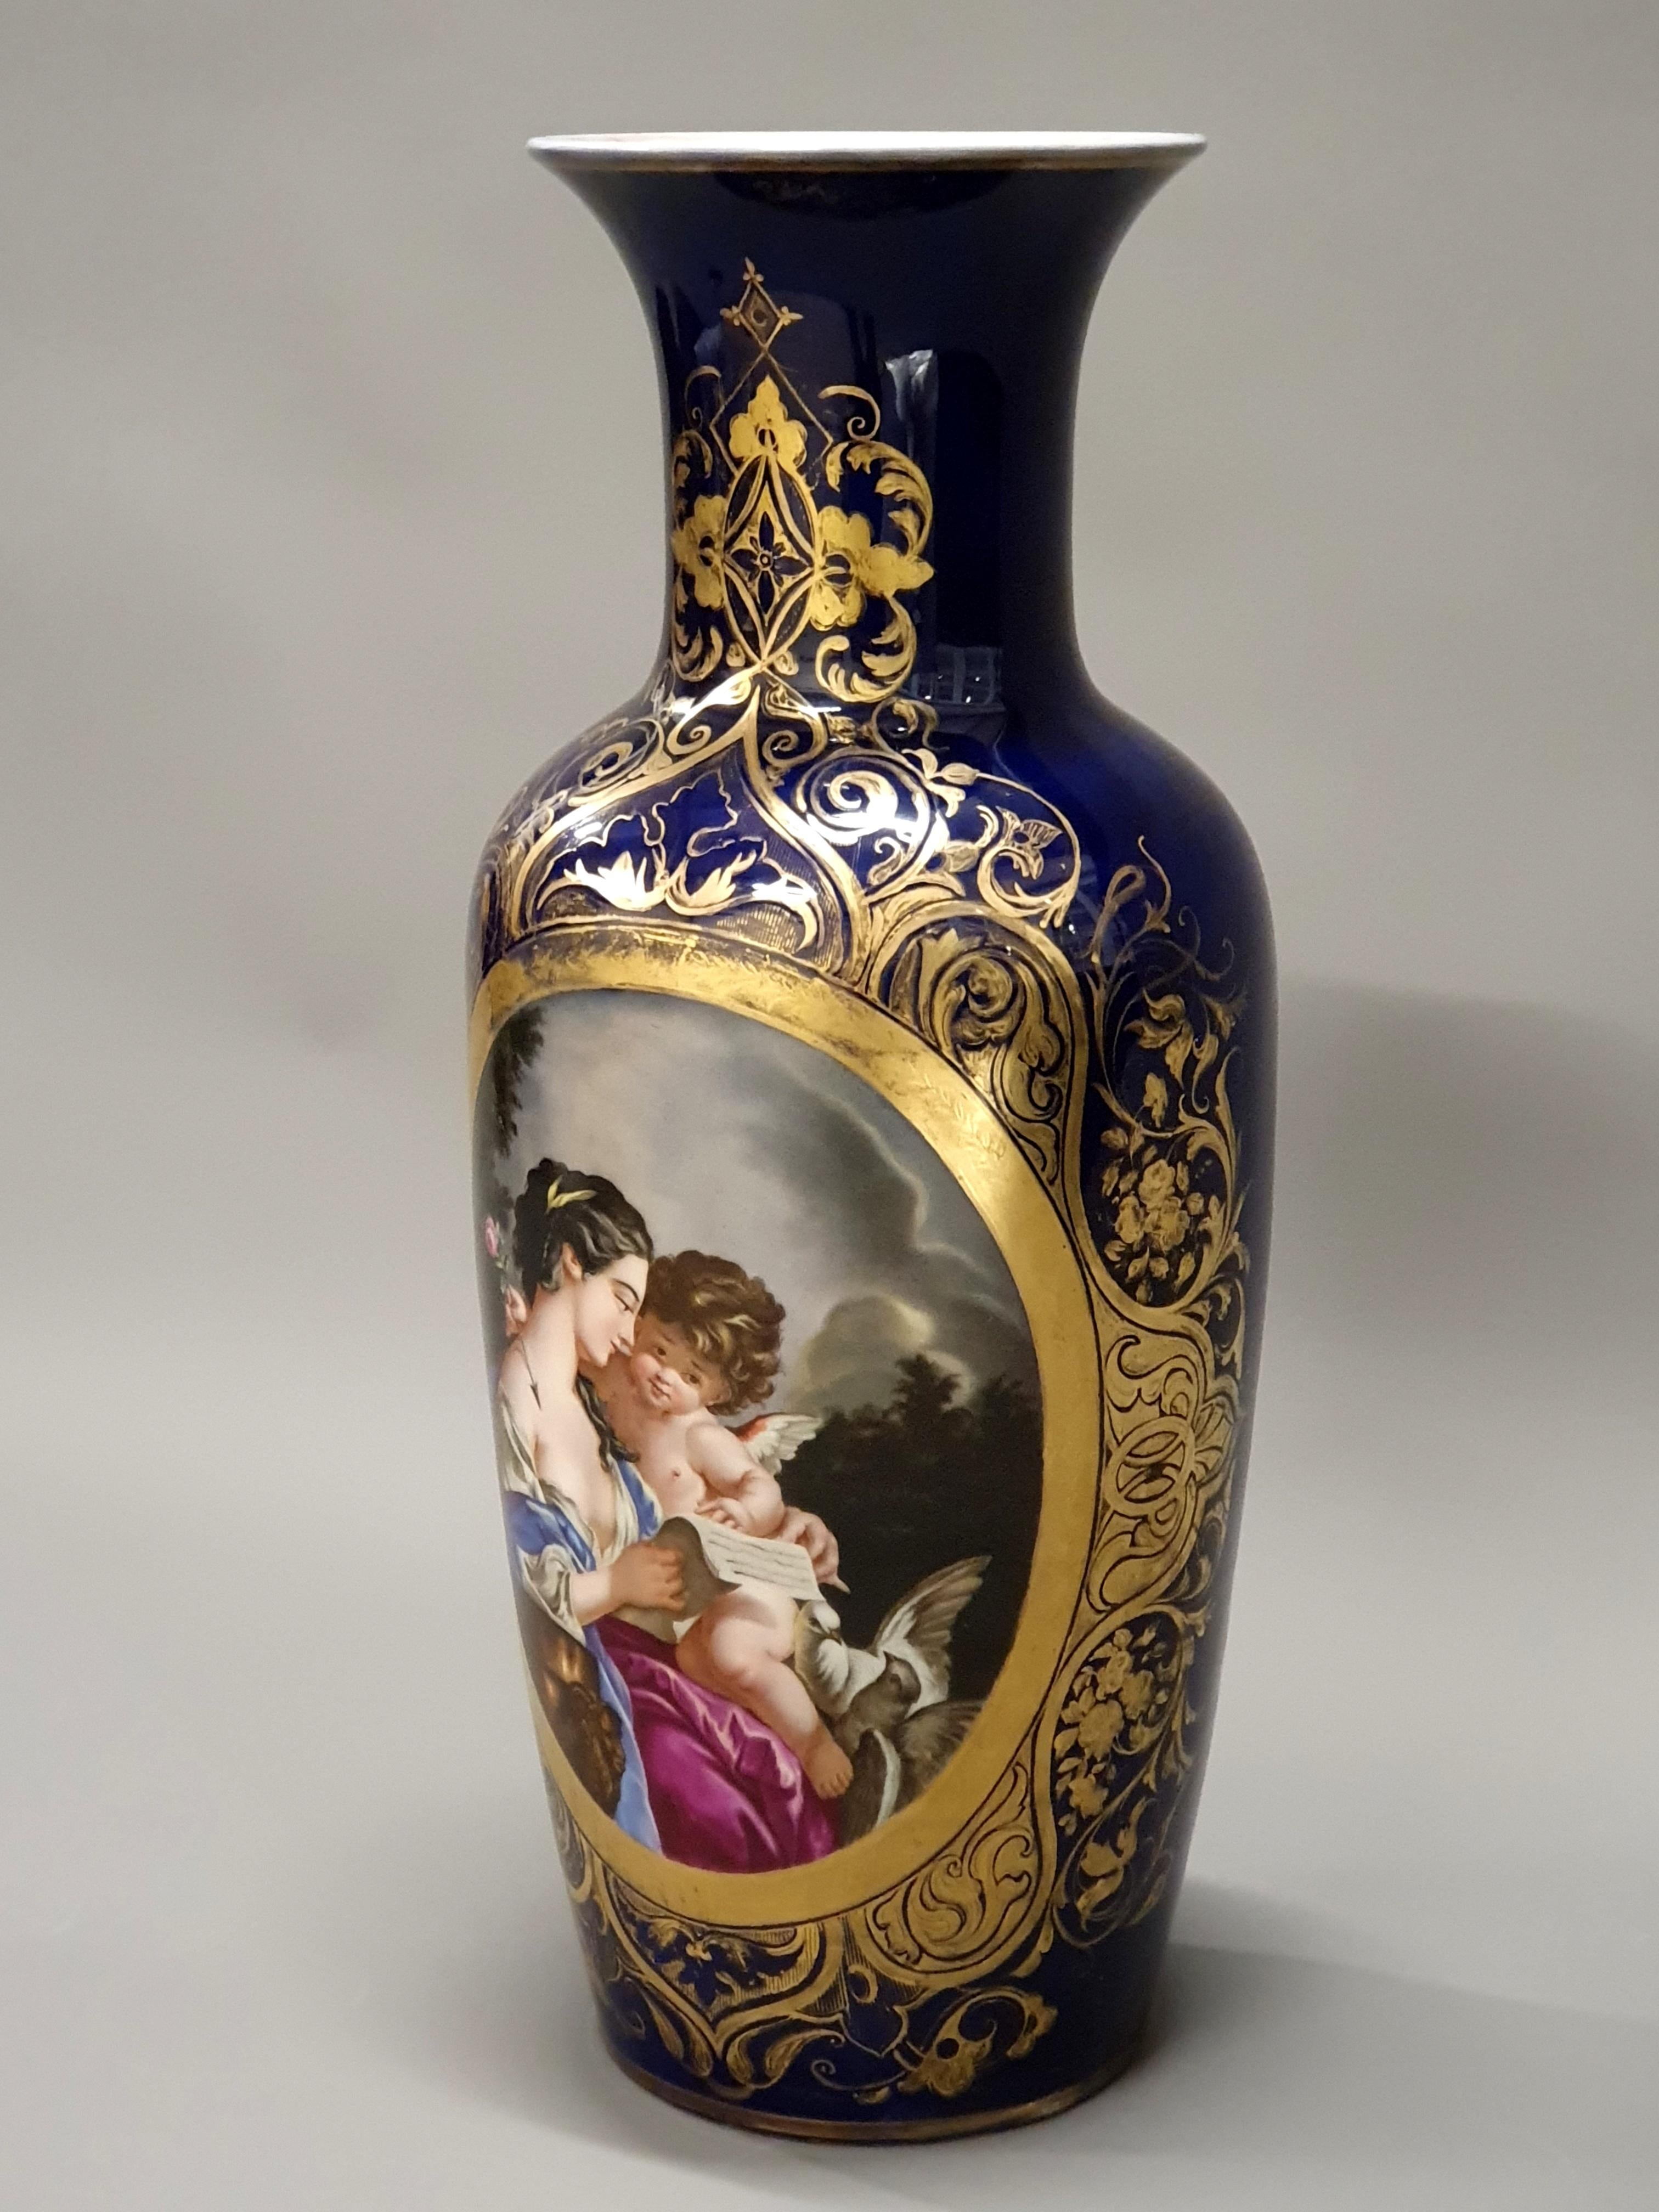 Grand vase en porcelaine fine de Valentine de couleur bleu cobalt et richement orné de feuillages et de rinceaux dorés. Magnifique décor représentant La toilette de Vénus d'après François Boucher, d'une qualité et d'une finesse